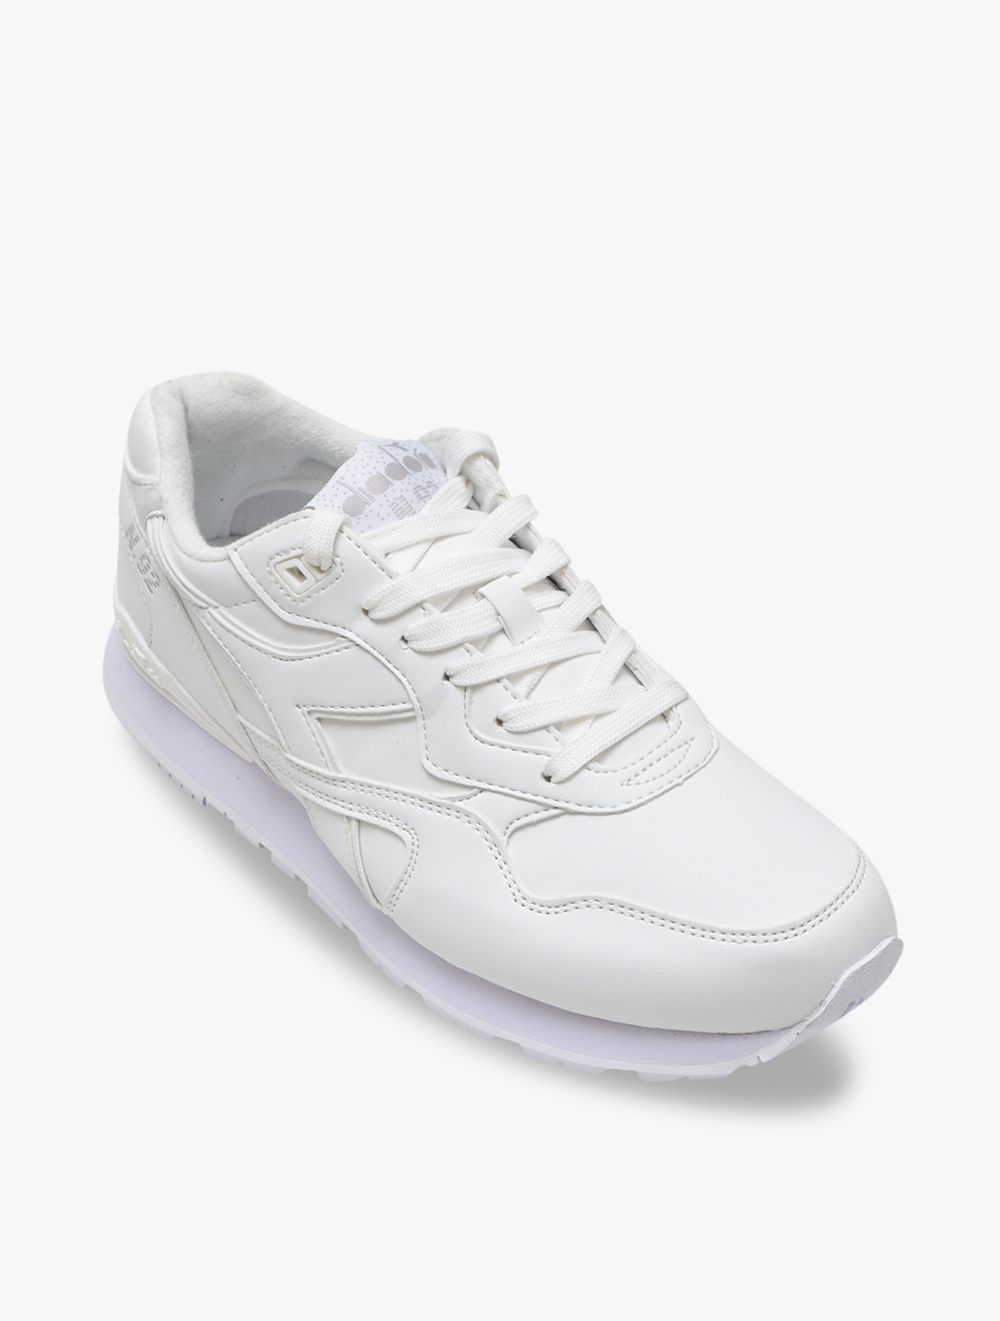 Diadora N.92 L Men's Sneakers Shoes - White